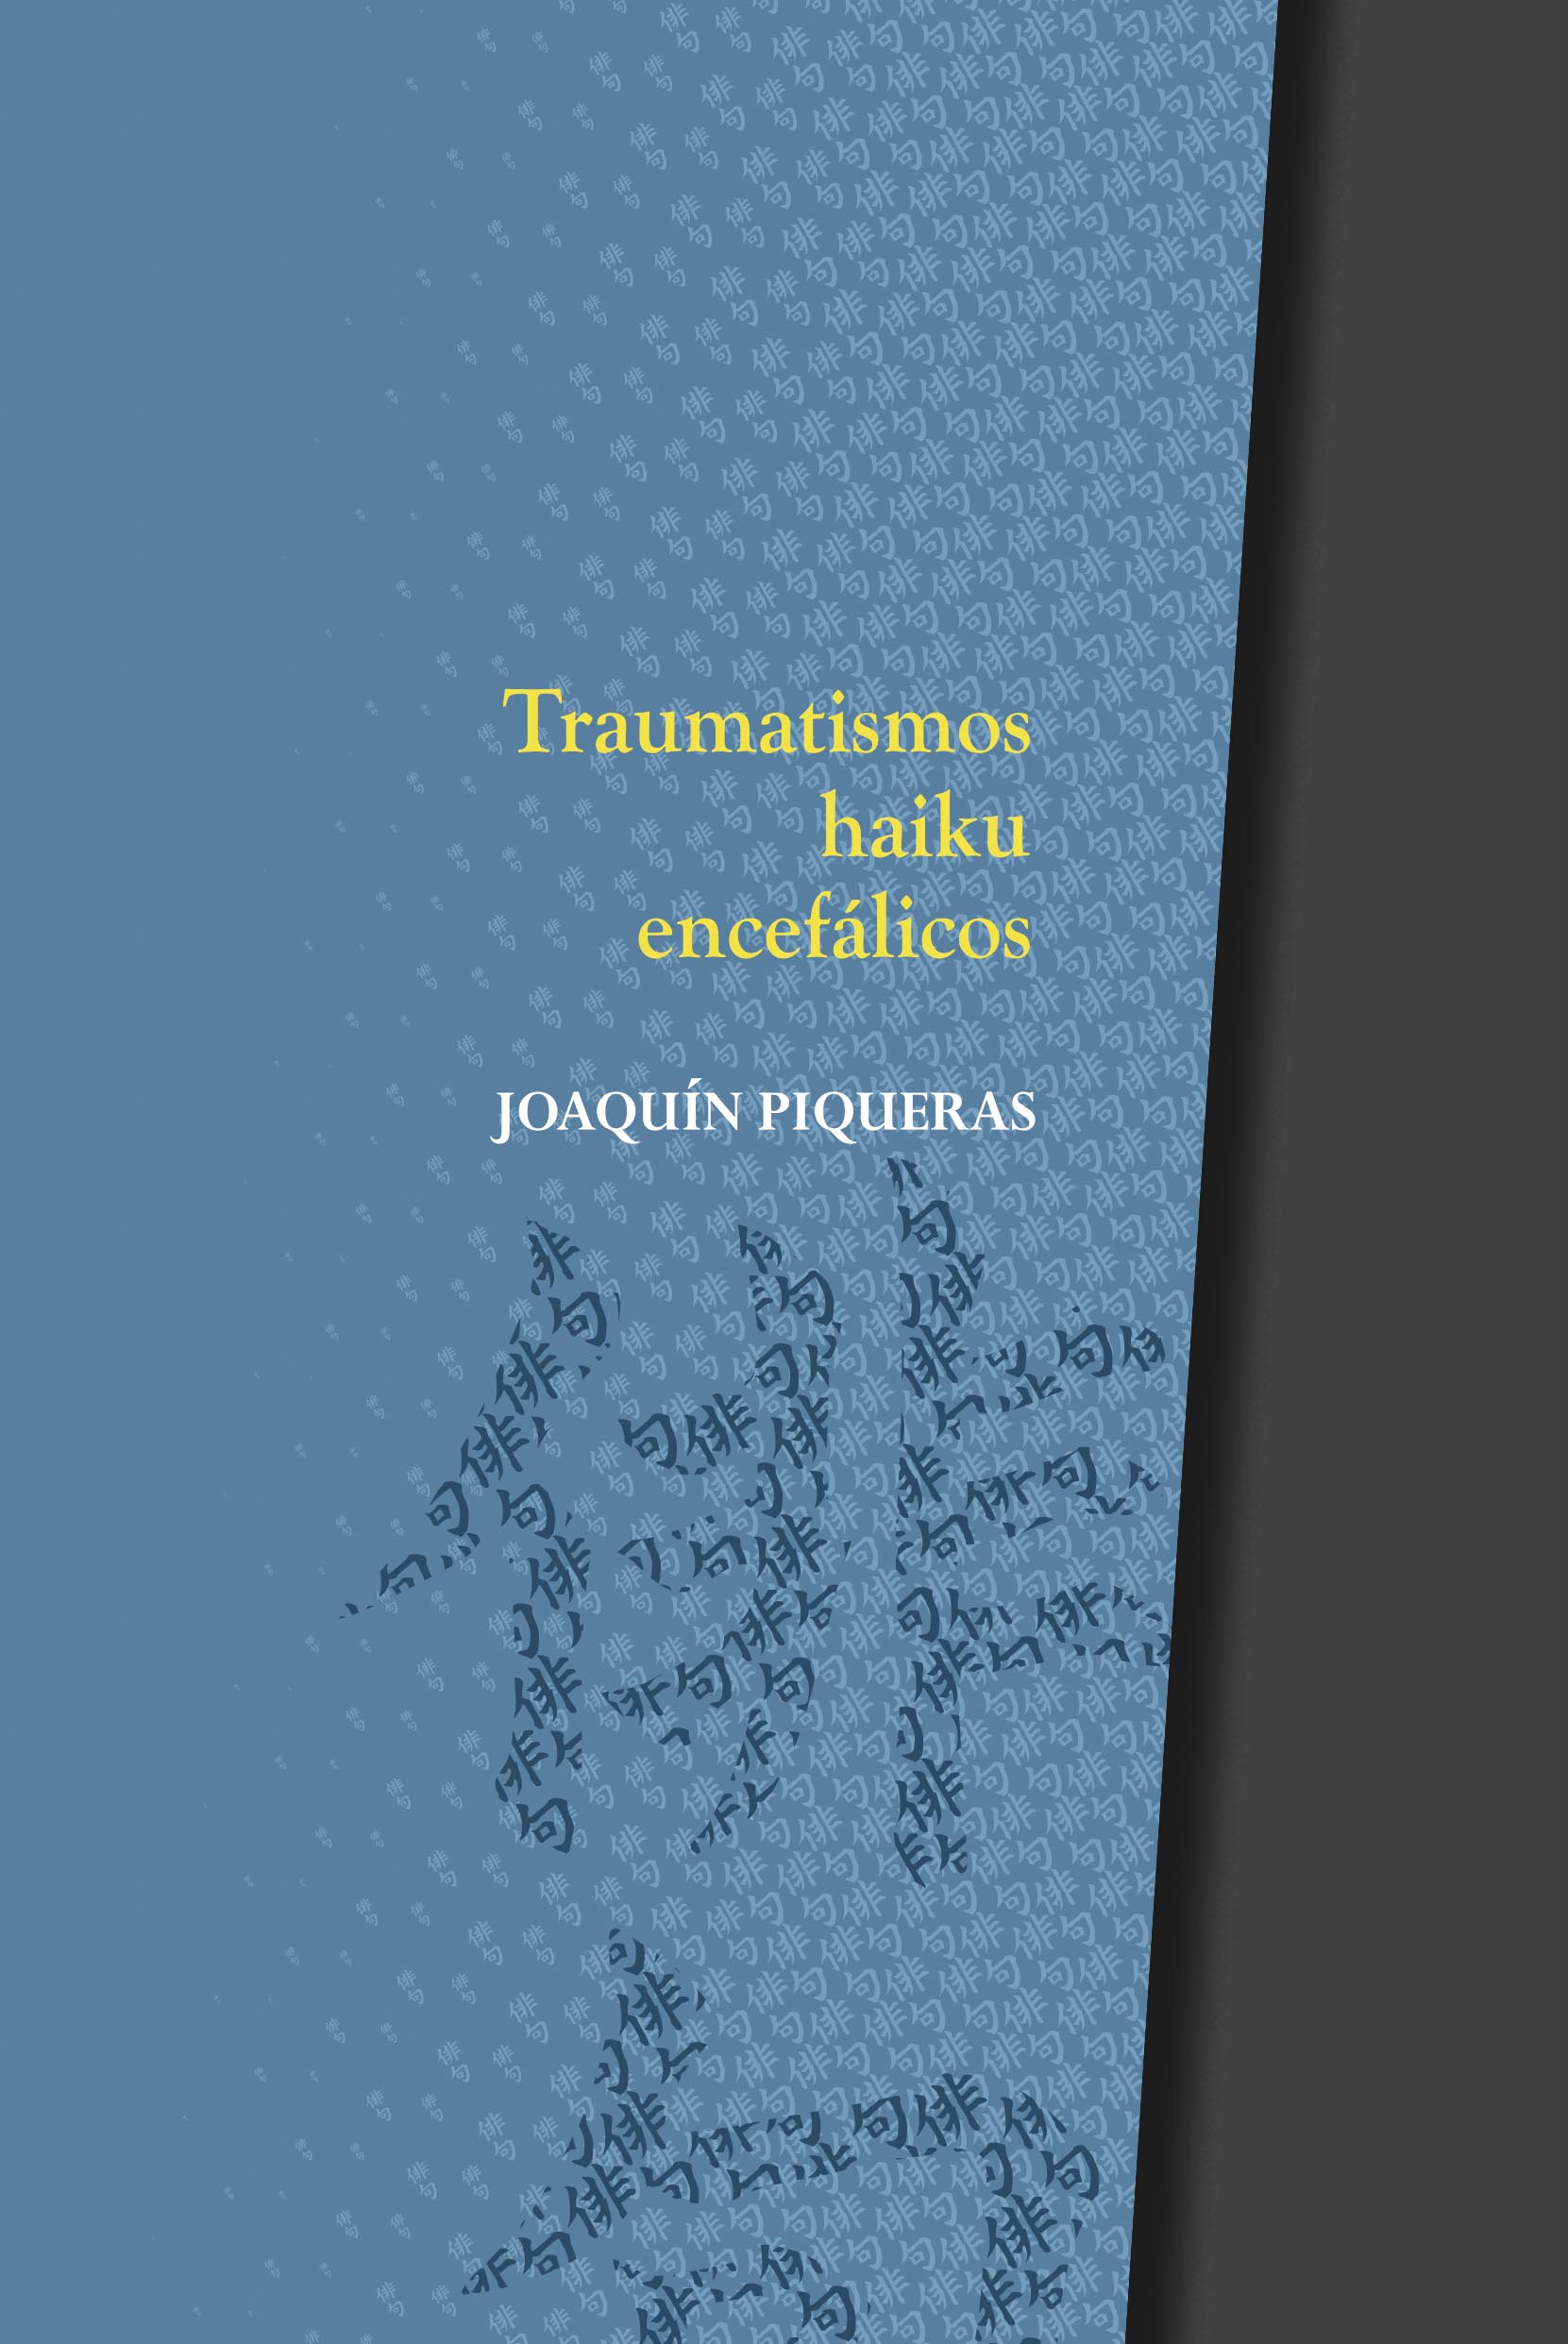 Traumatismos haiku encefálicos - Joaquín Piqueras | La Garúa Poesía